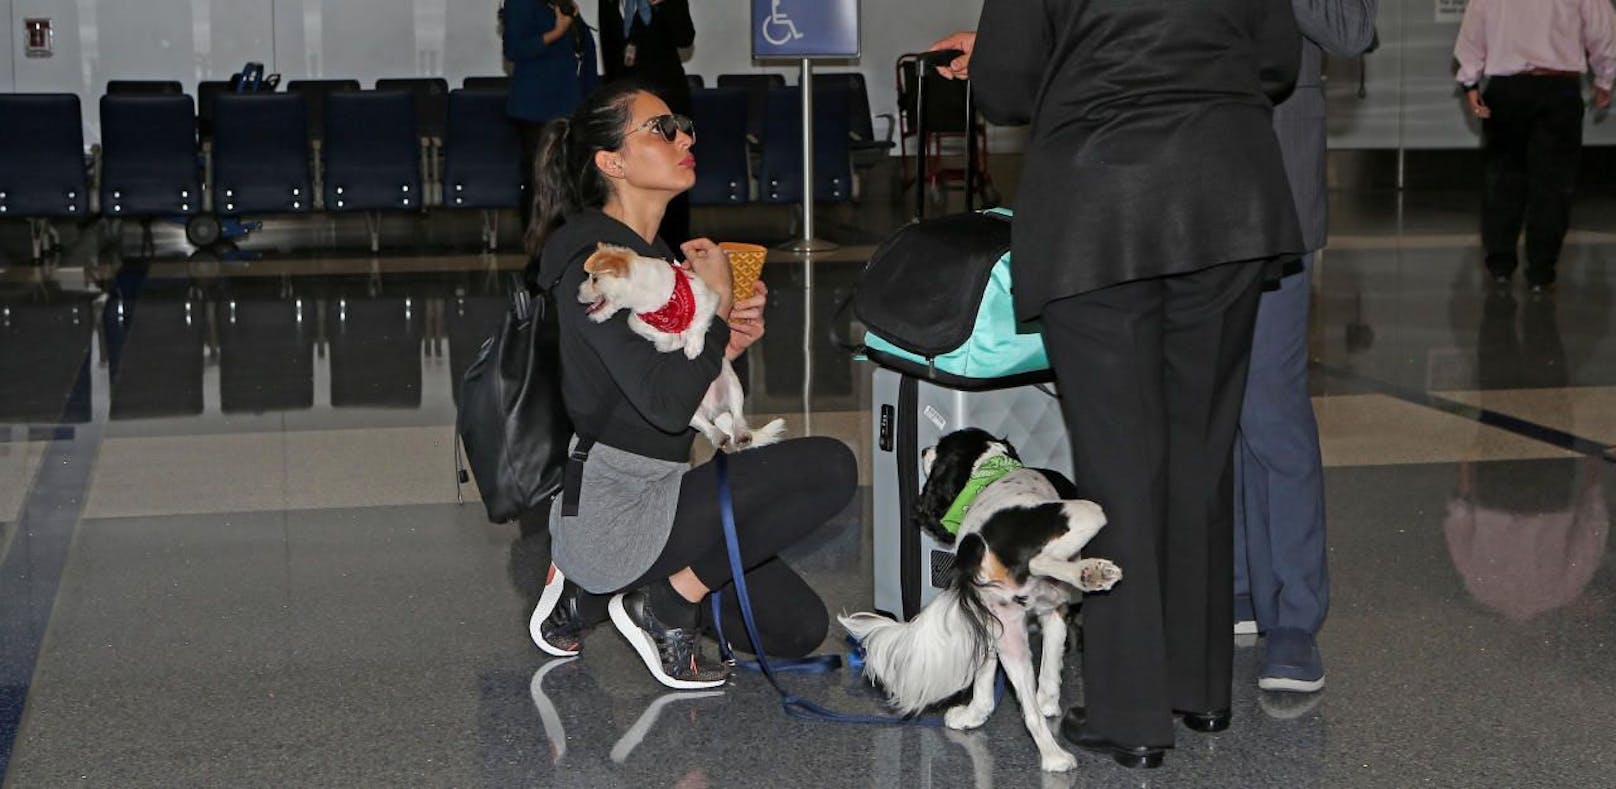 Hund von Model pinkelt Airport-Mitarbeiterin an